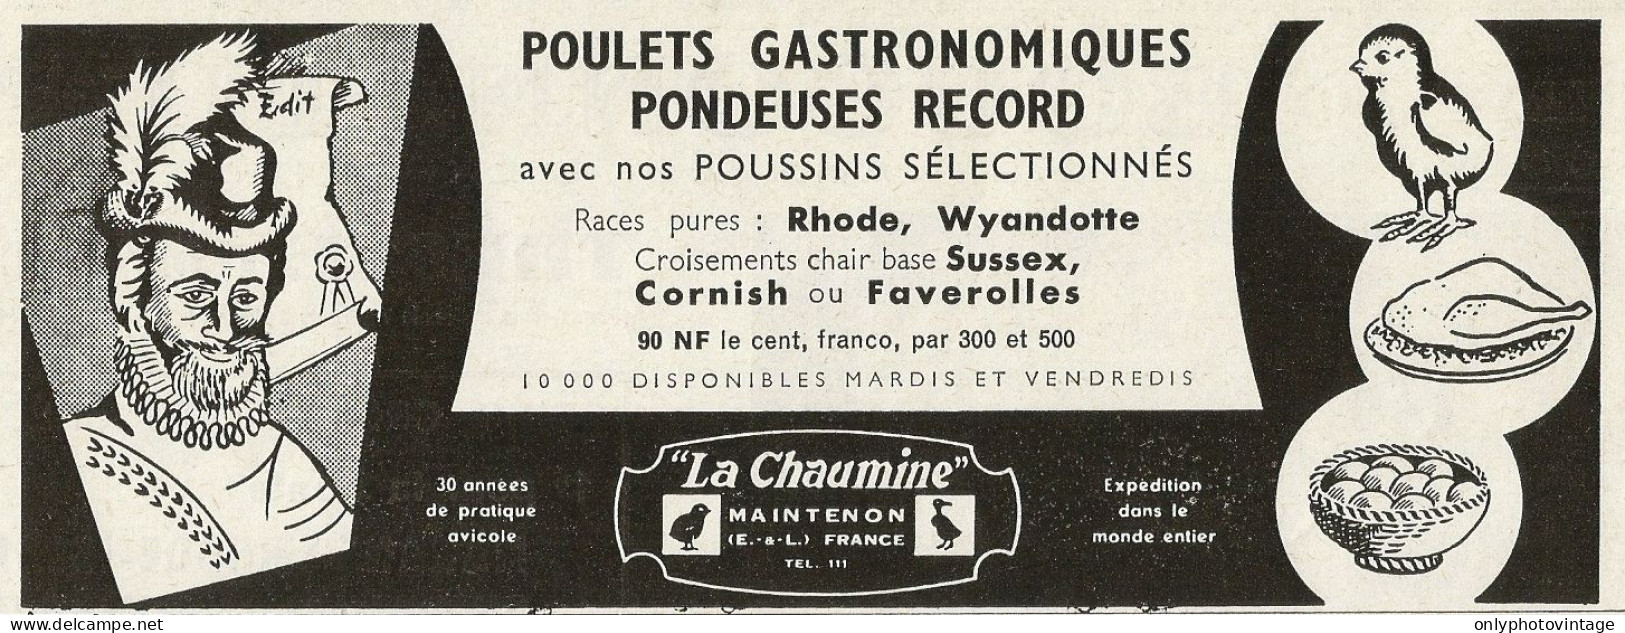 Poulets Gastronomiques Pondeuses Record LA CHAUMINE - Pubblicità 1961 - Publicidad